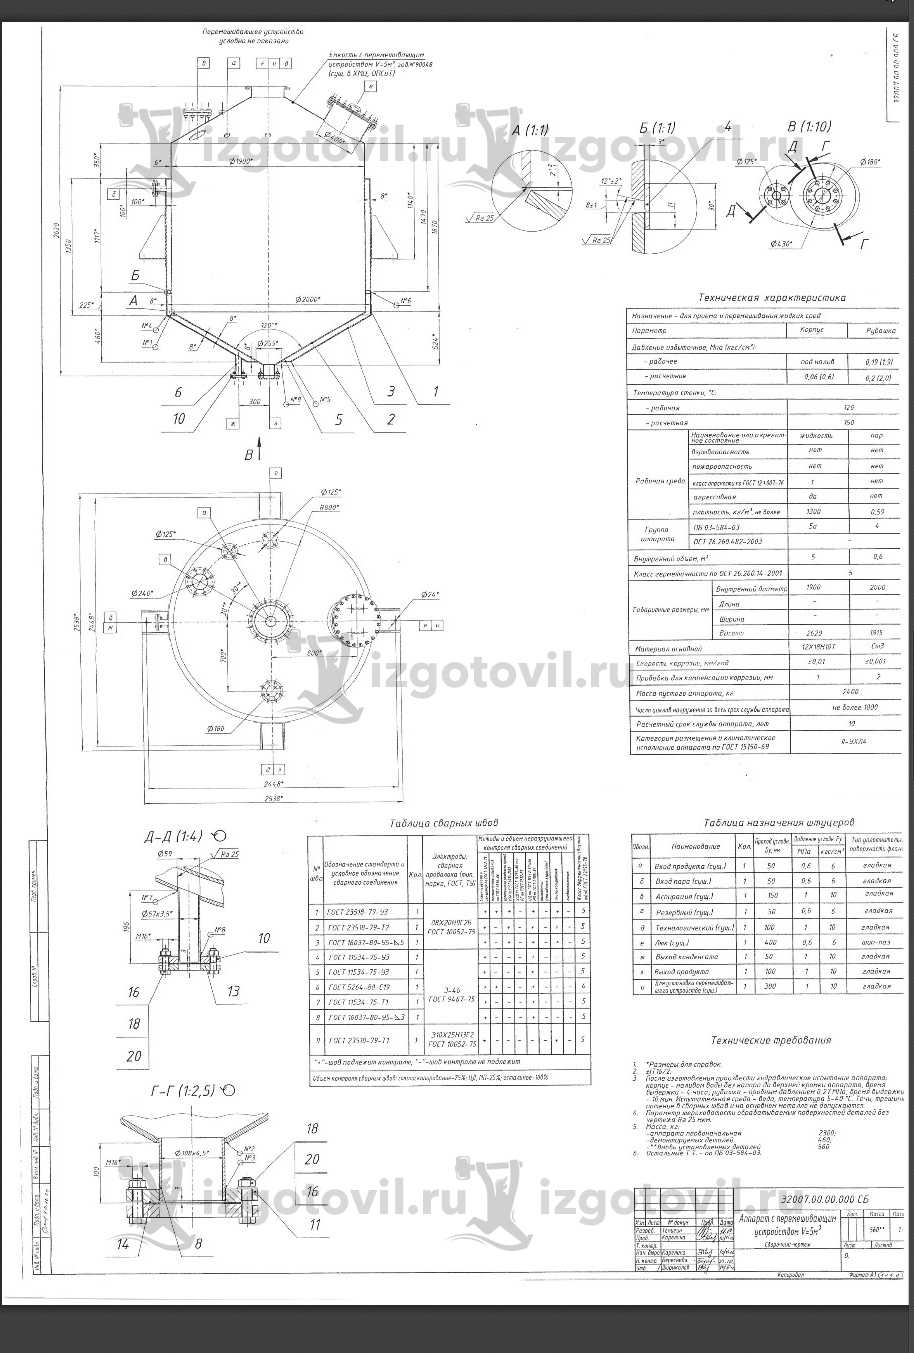 Изготовление деталей оборудования (изготовление реакторов 6,3 и 5 м3)